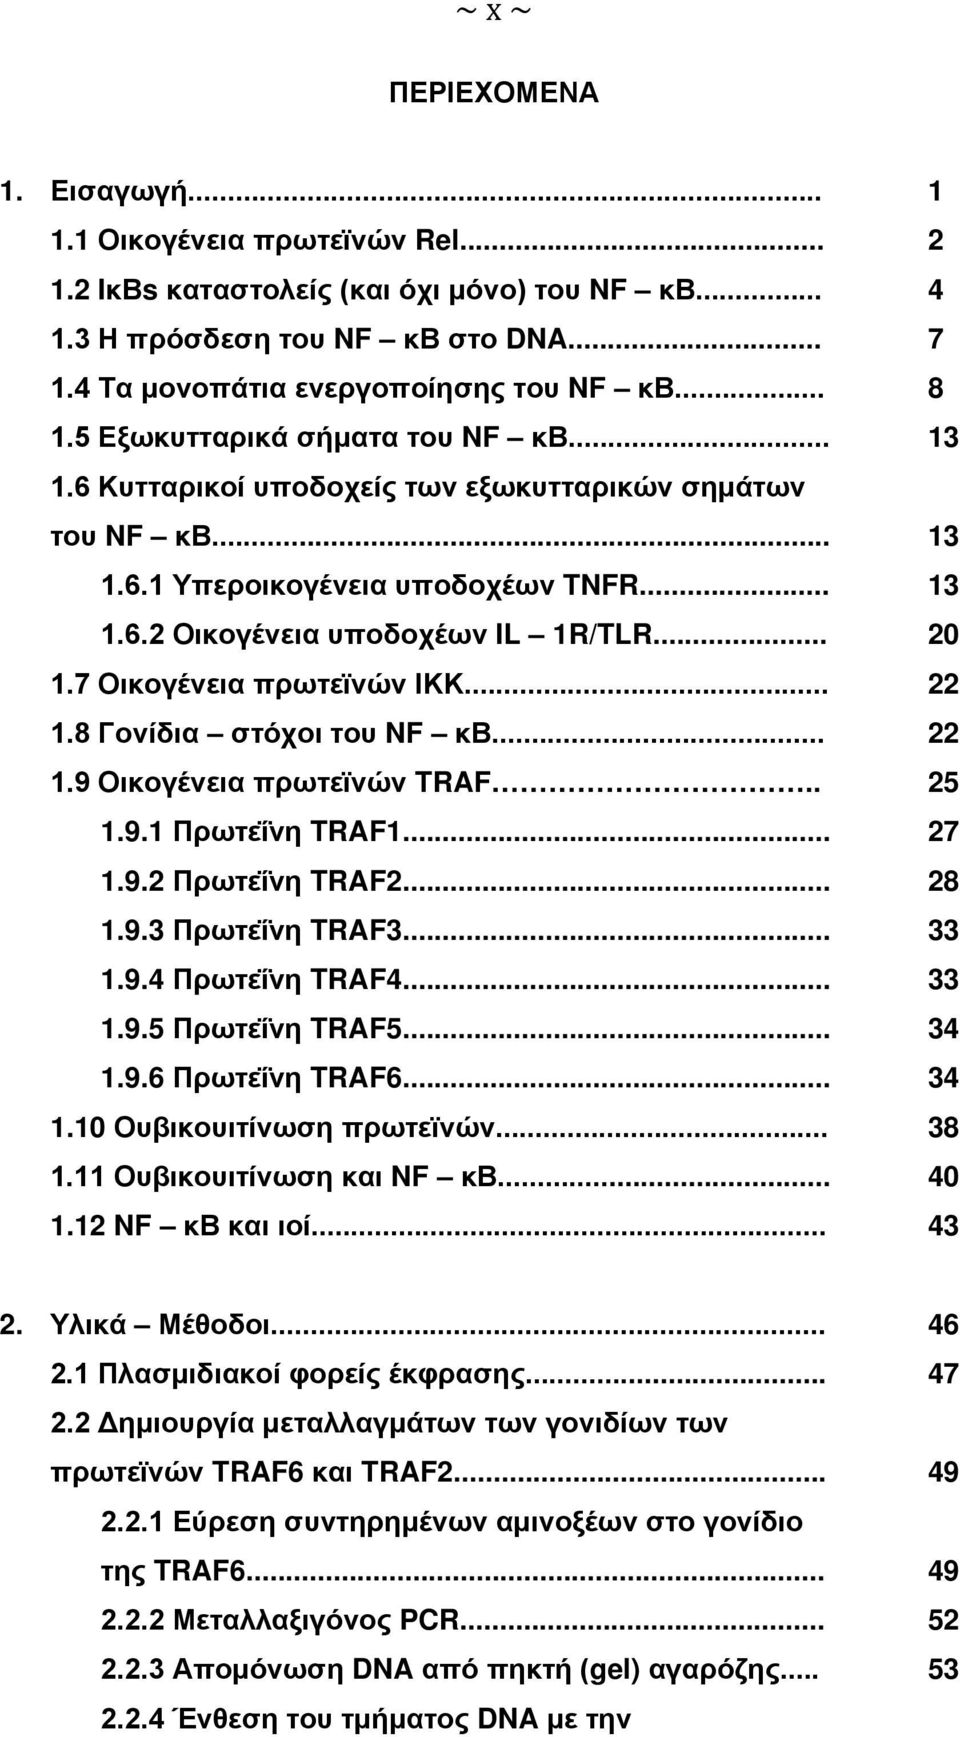 7 Οικογένεια πρωτεϊνών ΙΚΚ... 22 1.8 Γονίδια στόχοι του NF κβ... 22 1.9 Οικογένεια πρωτεϊνών TRAF.. 25 1.9.1 Πρωτεΐνη TRAF1... 27 1.9.2 Πρωτεΐνη TRAF2... 28 1.9.3 Πρωτεΐνη TRAF3... 33 1.9.4 Πρωτεΐνη TRAF4.